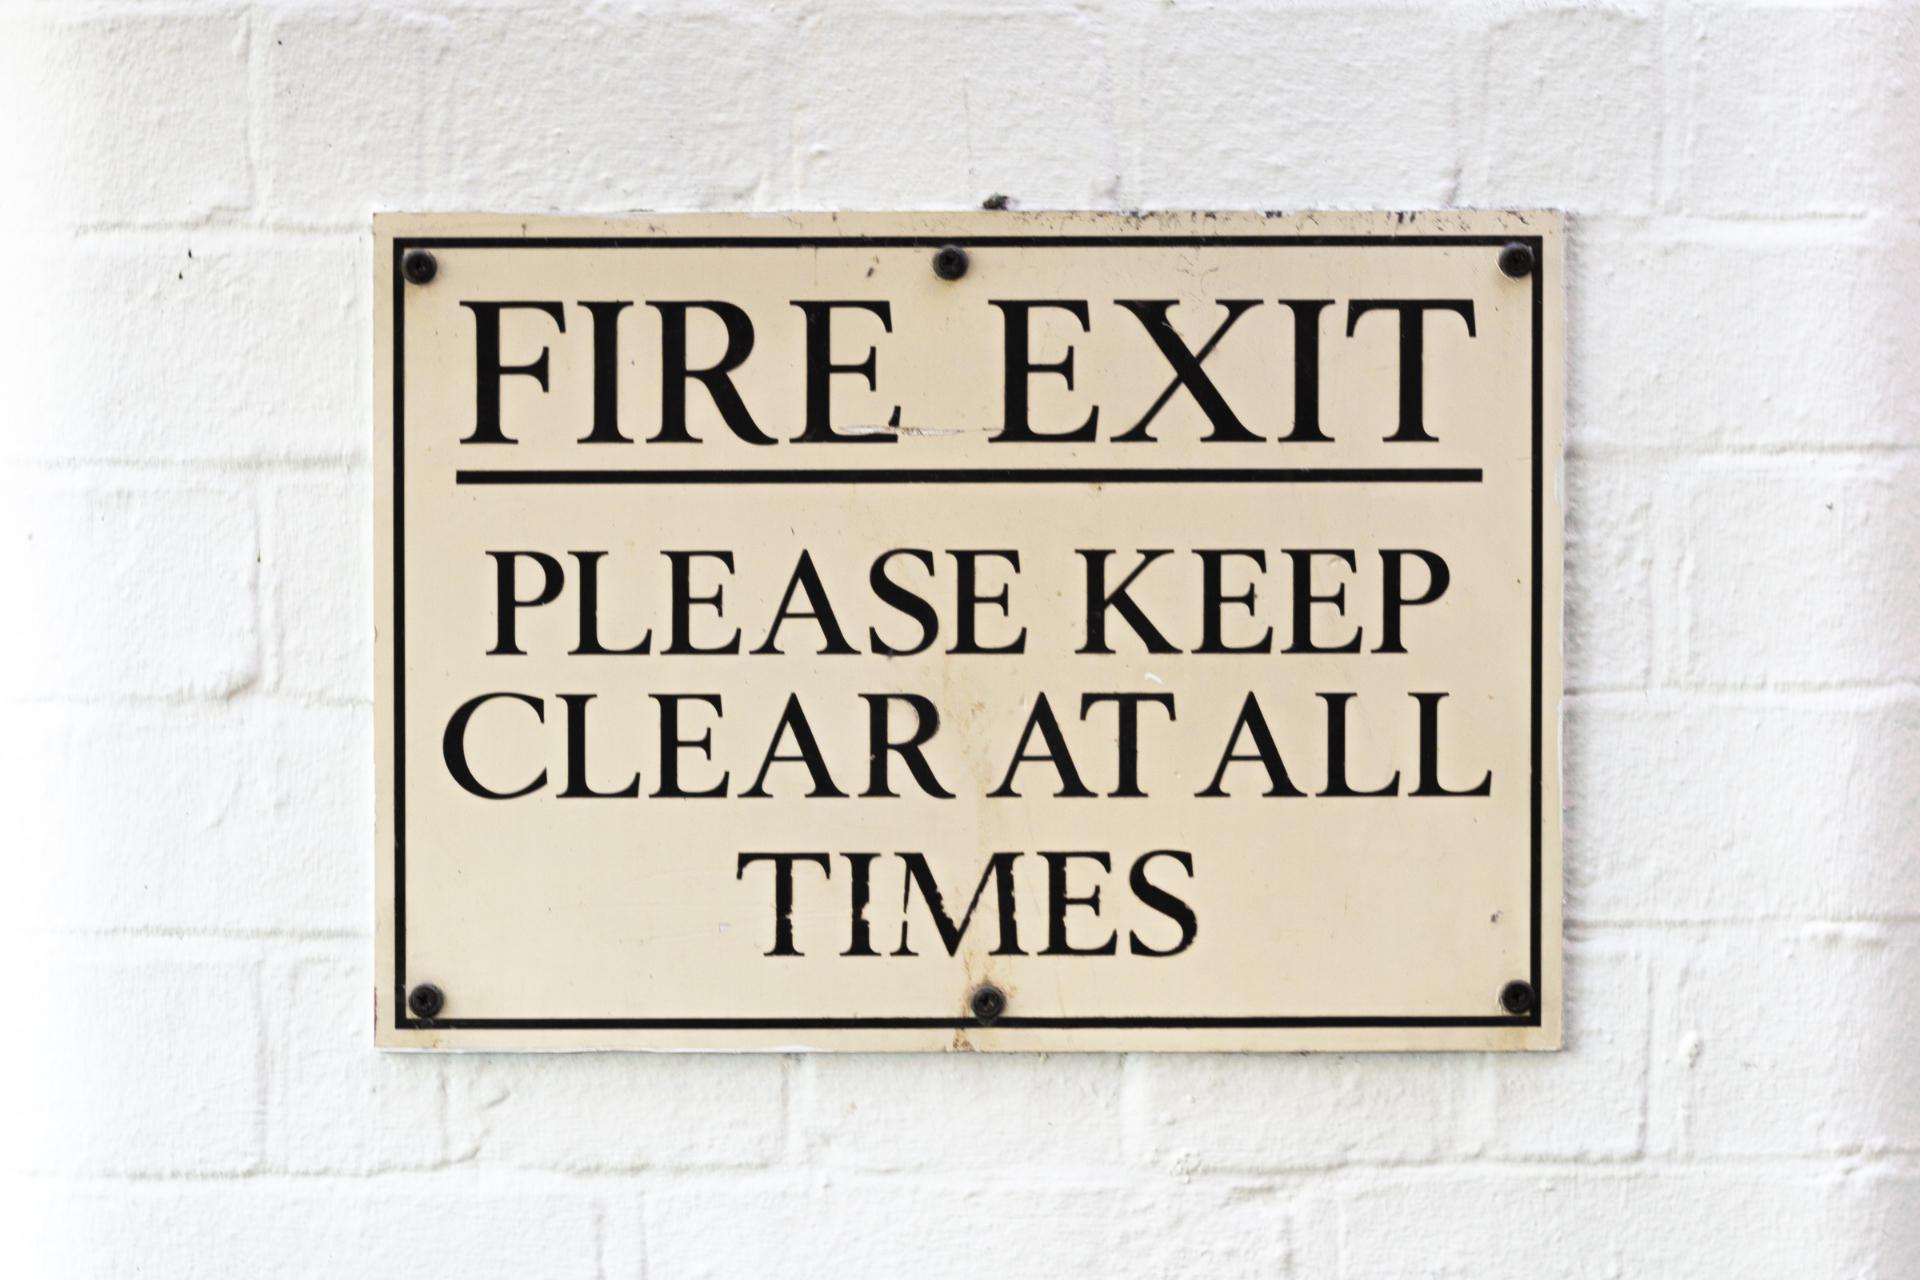 Señal de salida de incendios que advierte que se mantenga despejada en todo momento.